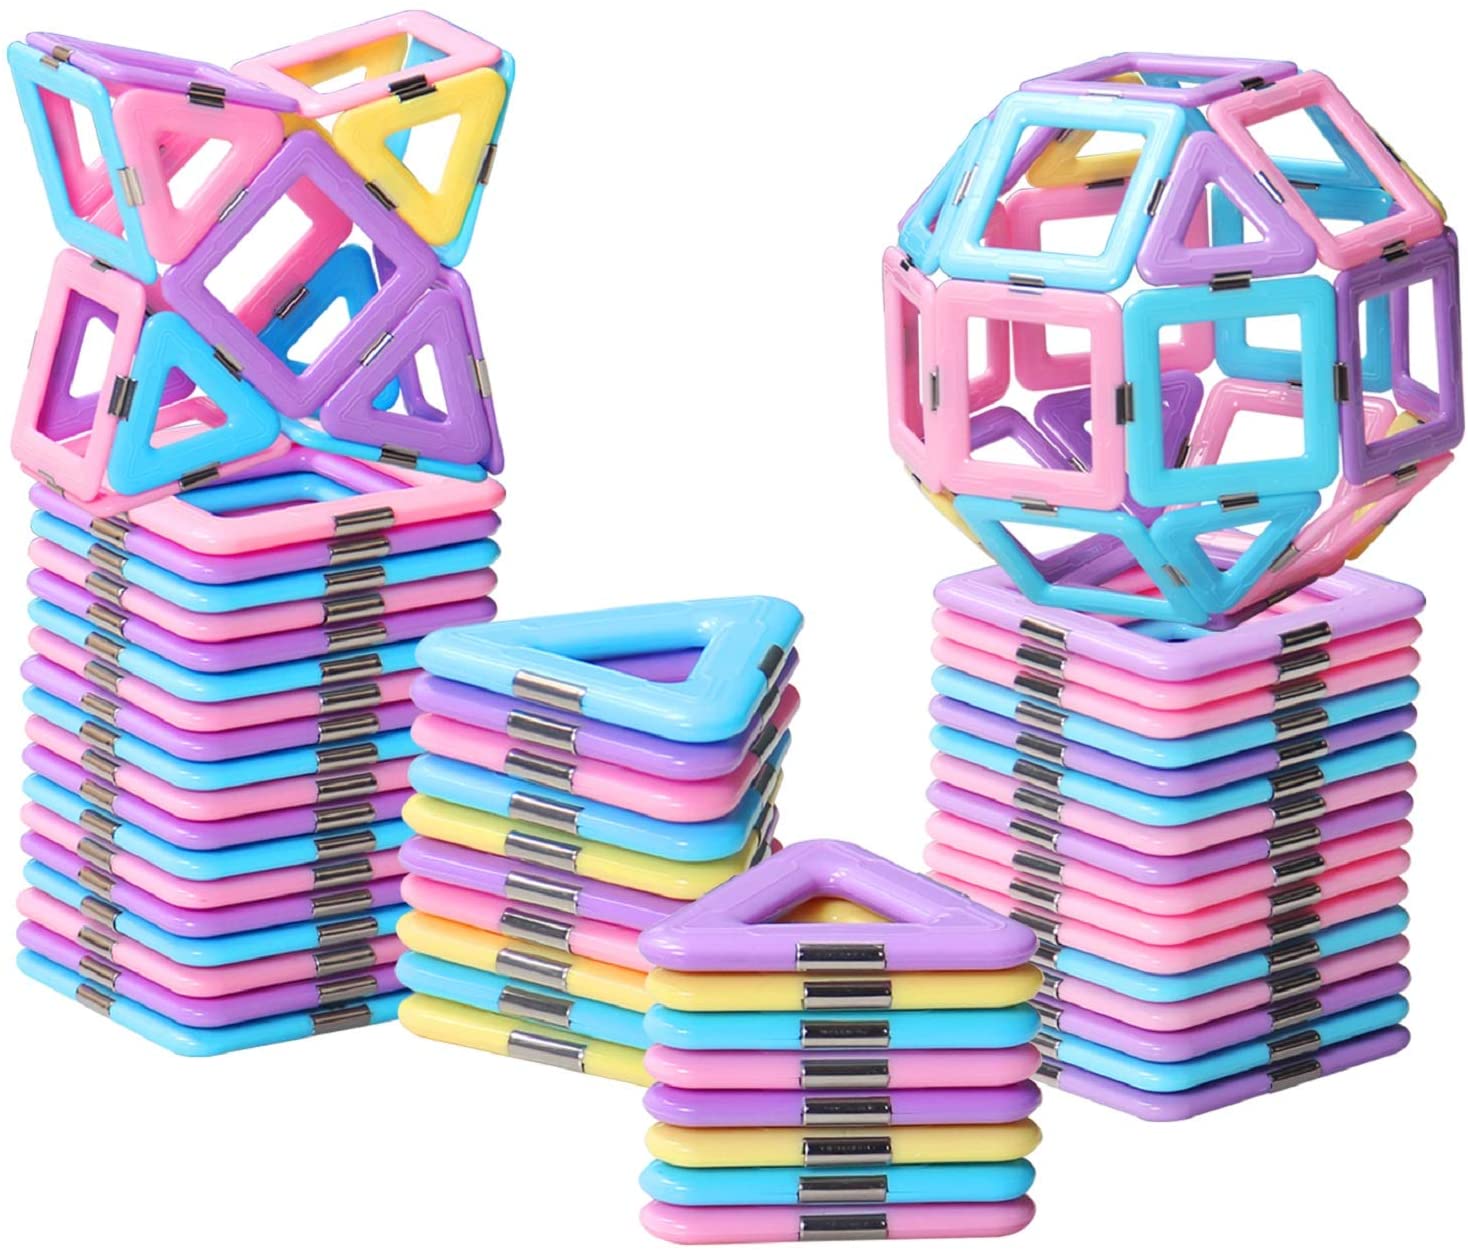 HOMOFY Geometric Magnetic Blocks Toy For Girls